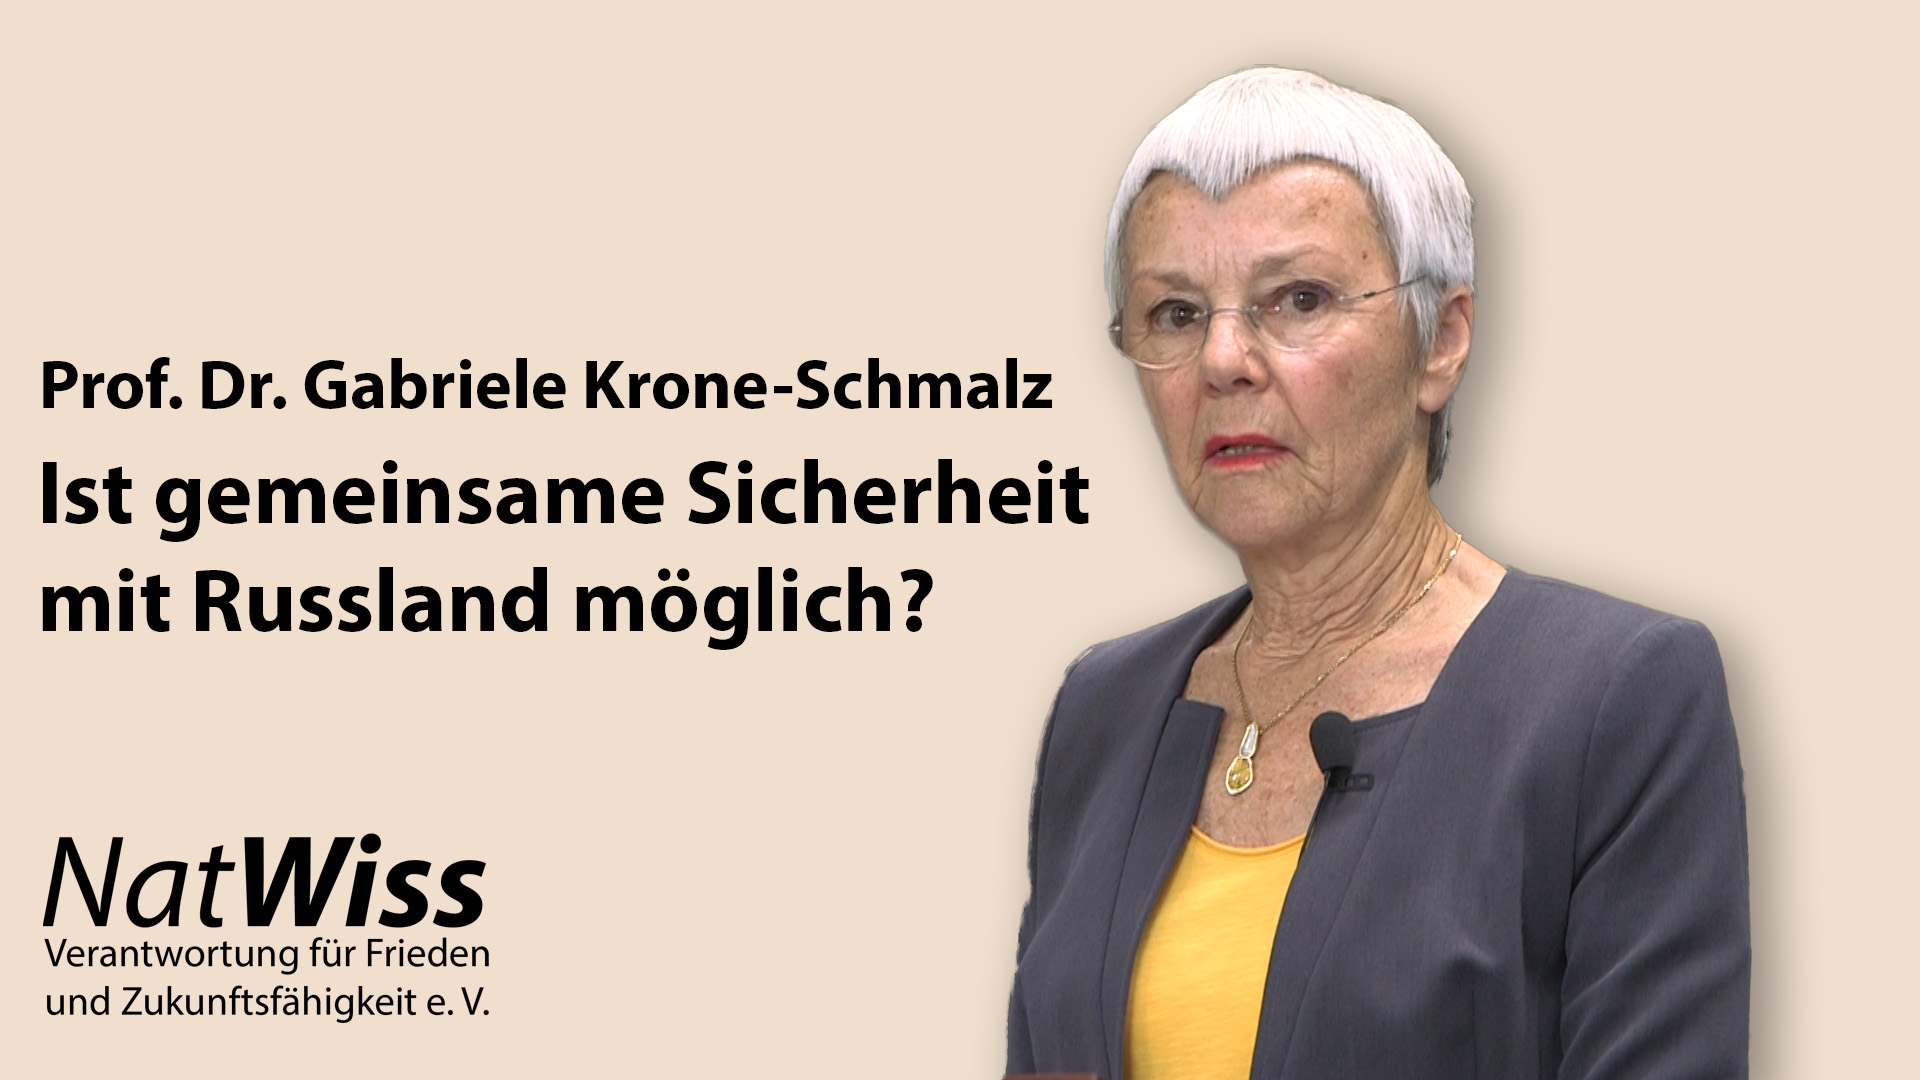 Prof. Dr. Gabriele Krone-Schmalz: Ist gemeinsame Sicherheit mit Russland möglich?